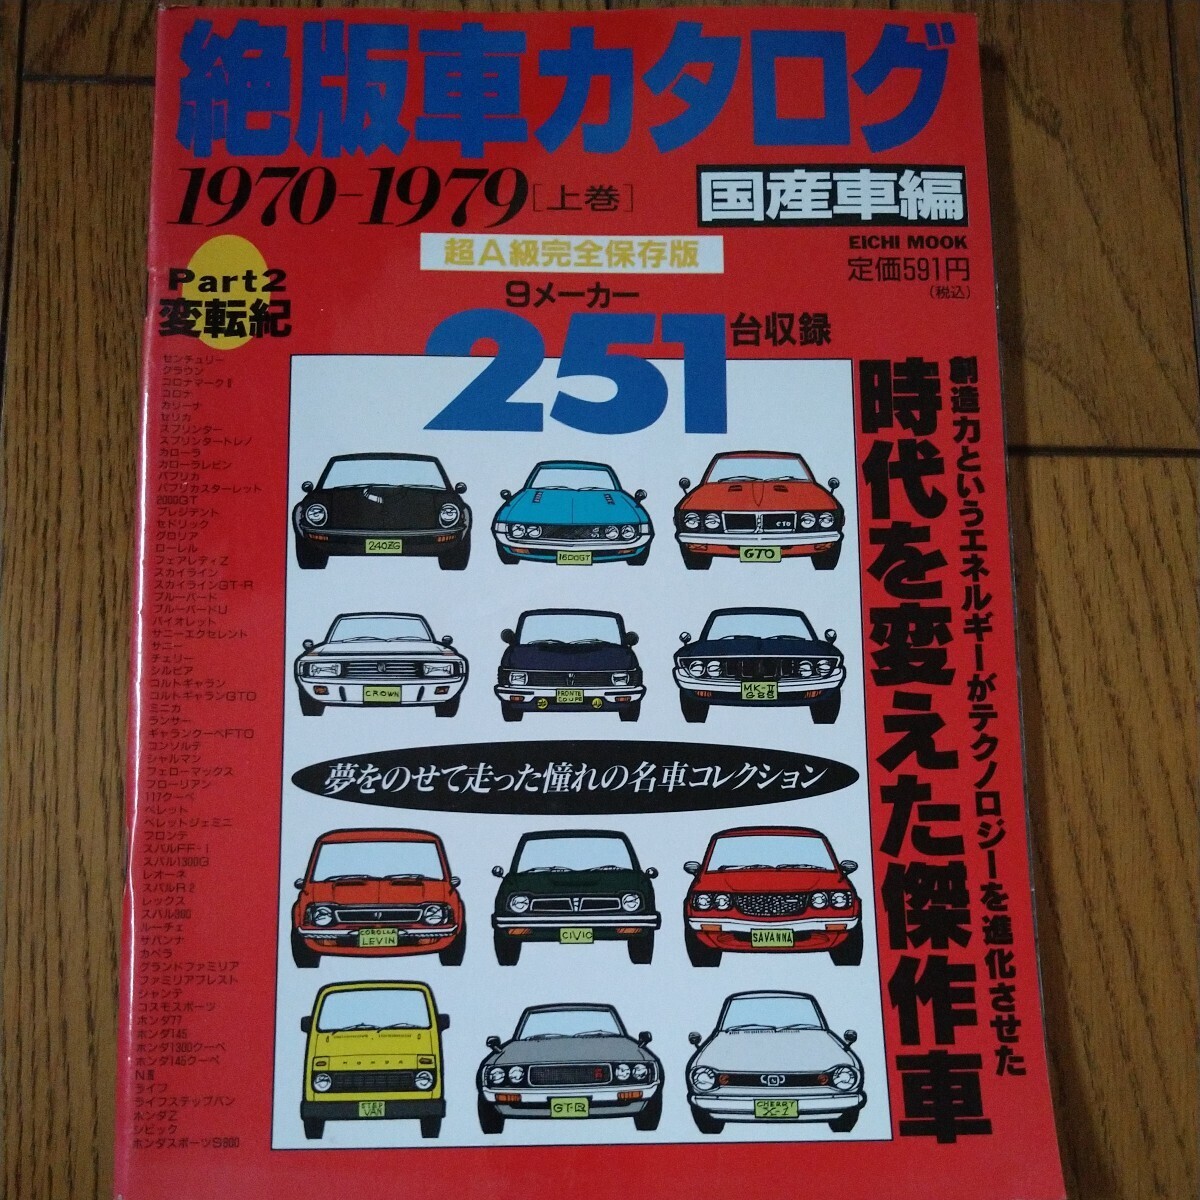 絶版車カタログ 国産車編 1970-1979 ［上巻］ 9メーカー 251台収録_画像1